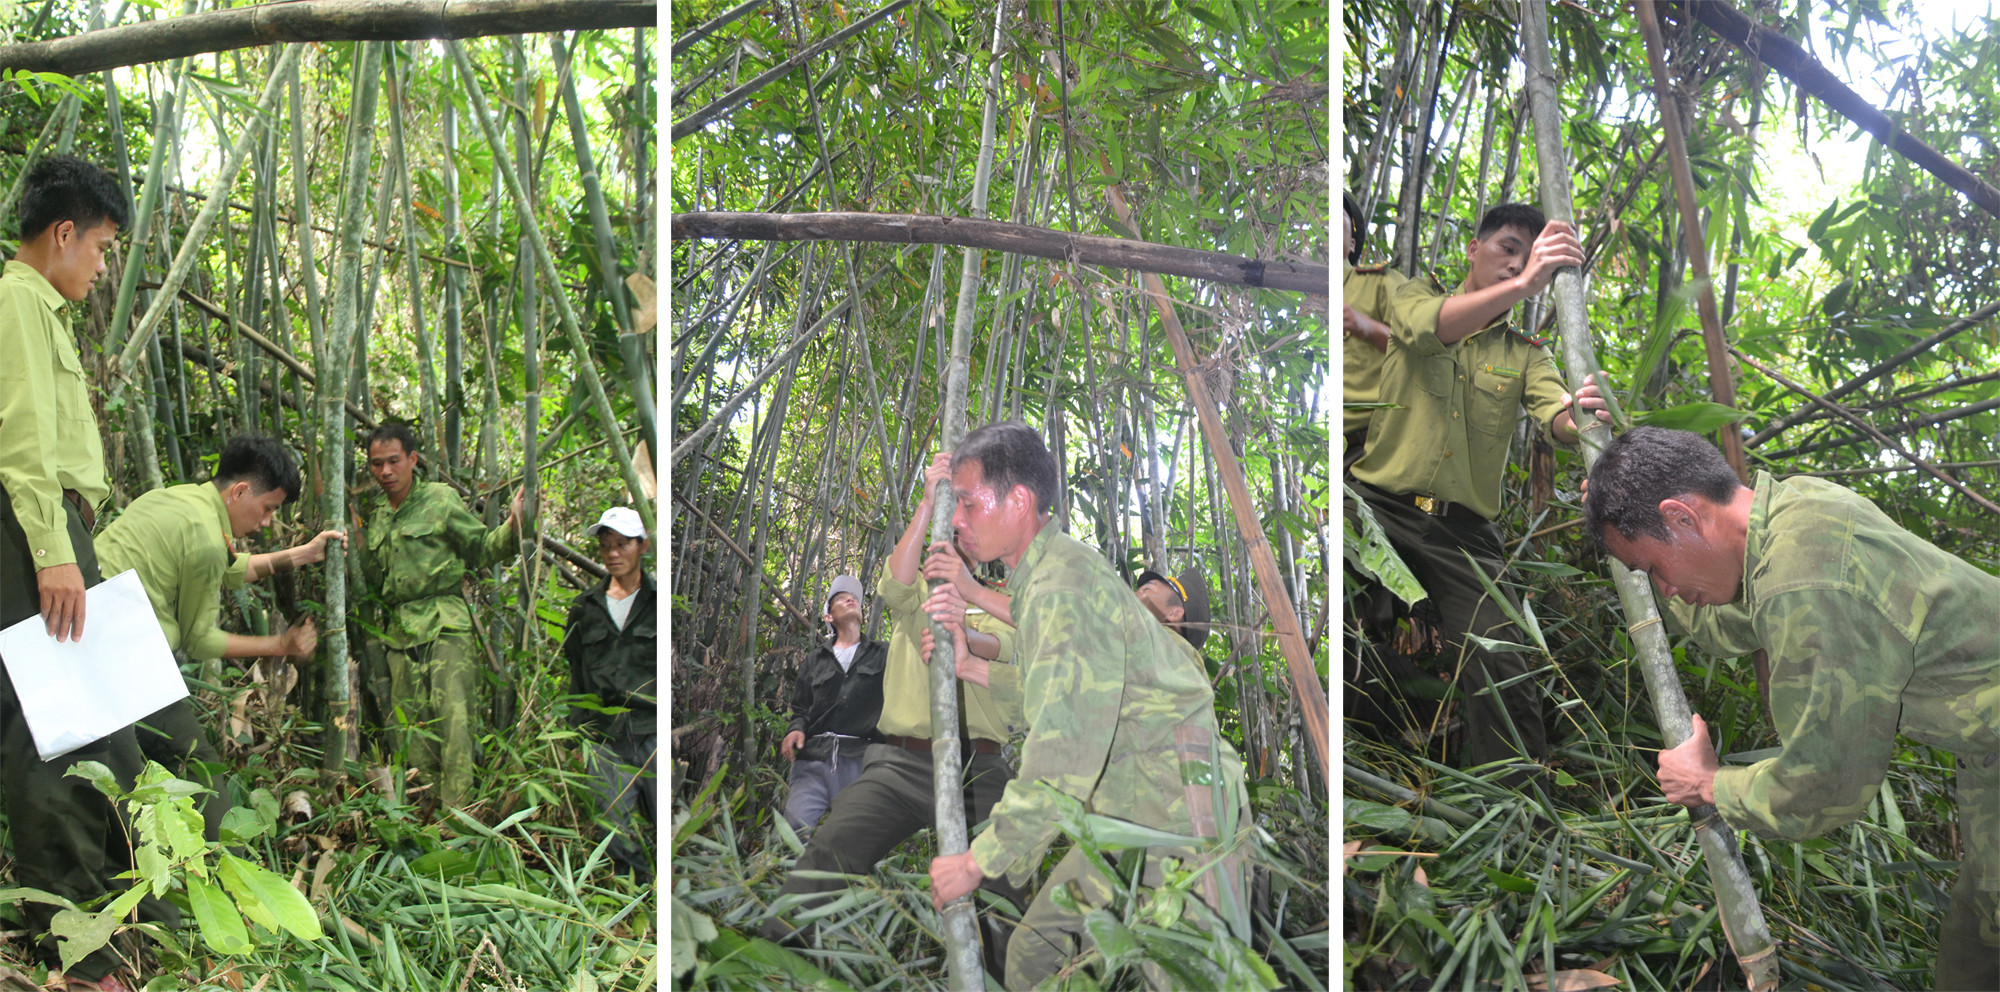 Trước khi phân vùng thu hoạch lùng, các lực lượng chức năng trực tiếp vào rừng, hướng dẫn người dân cách khai thác để vừa đảm bảo hiệu quả, năng suất khai thác vừa đảm bảo việc phát triển bền vững các rừng lùng.